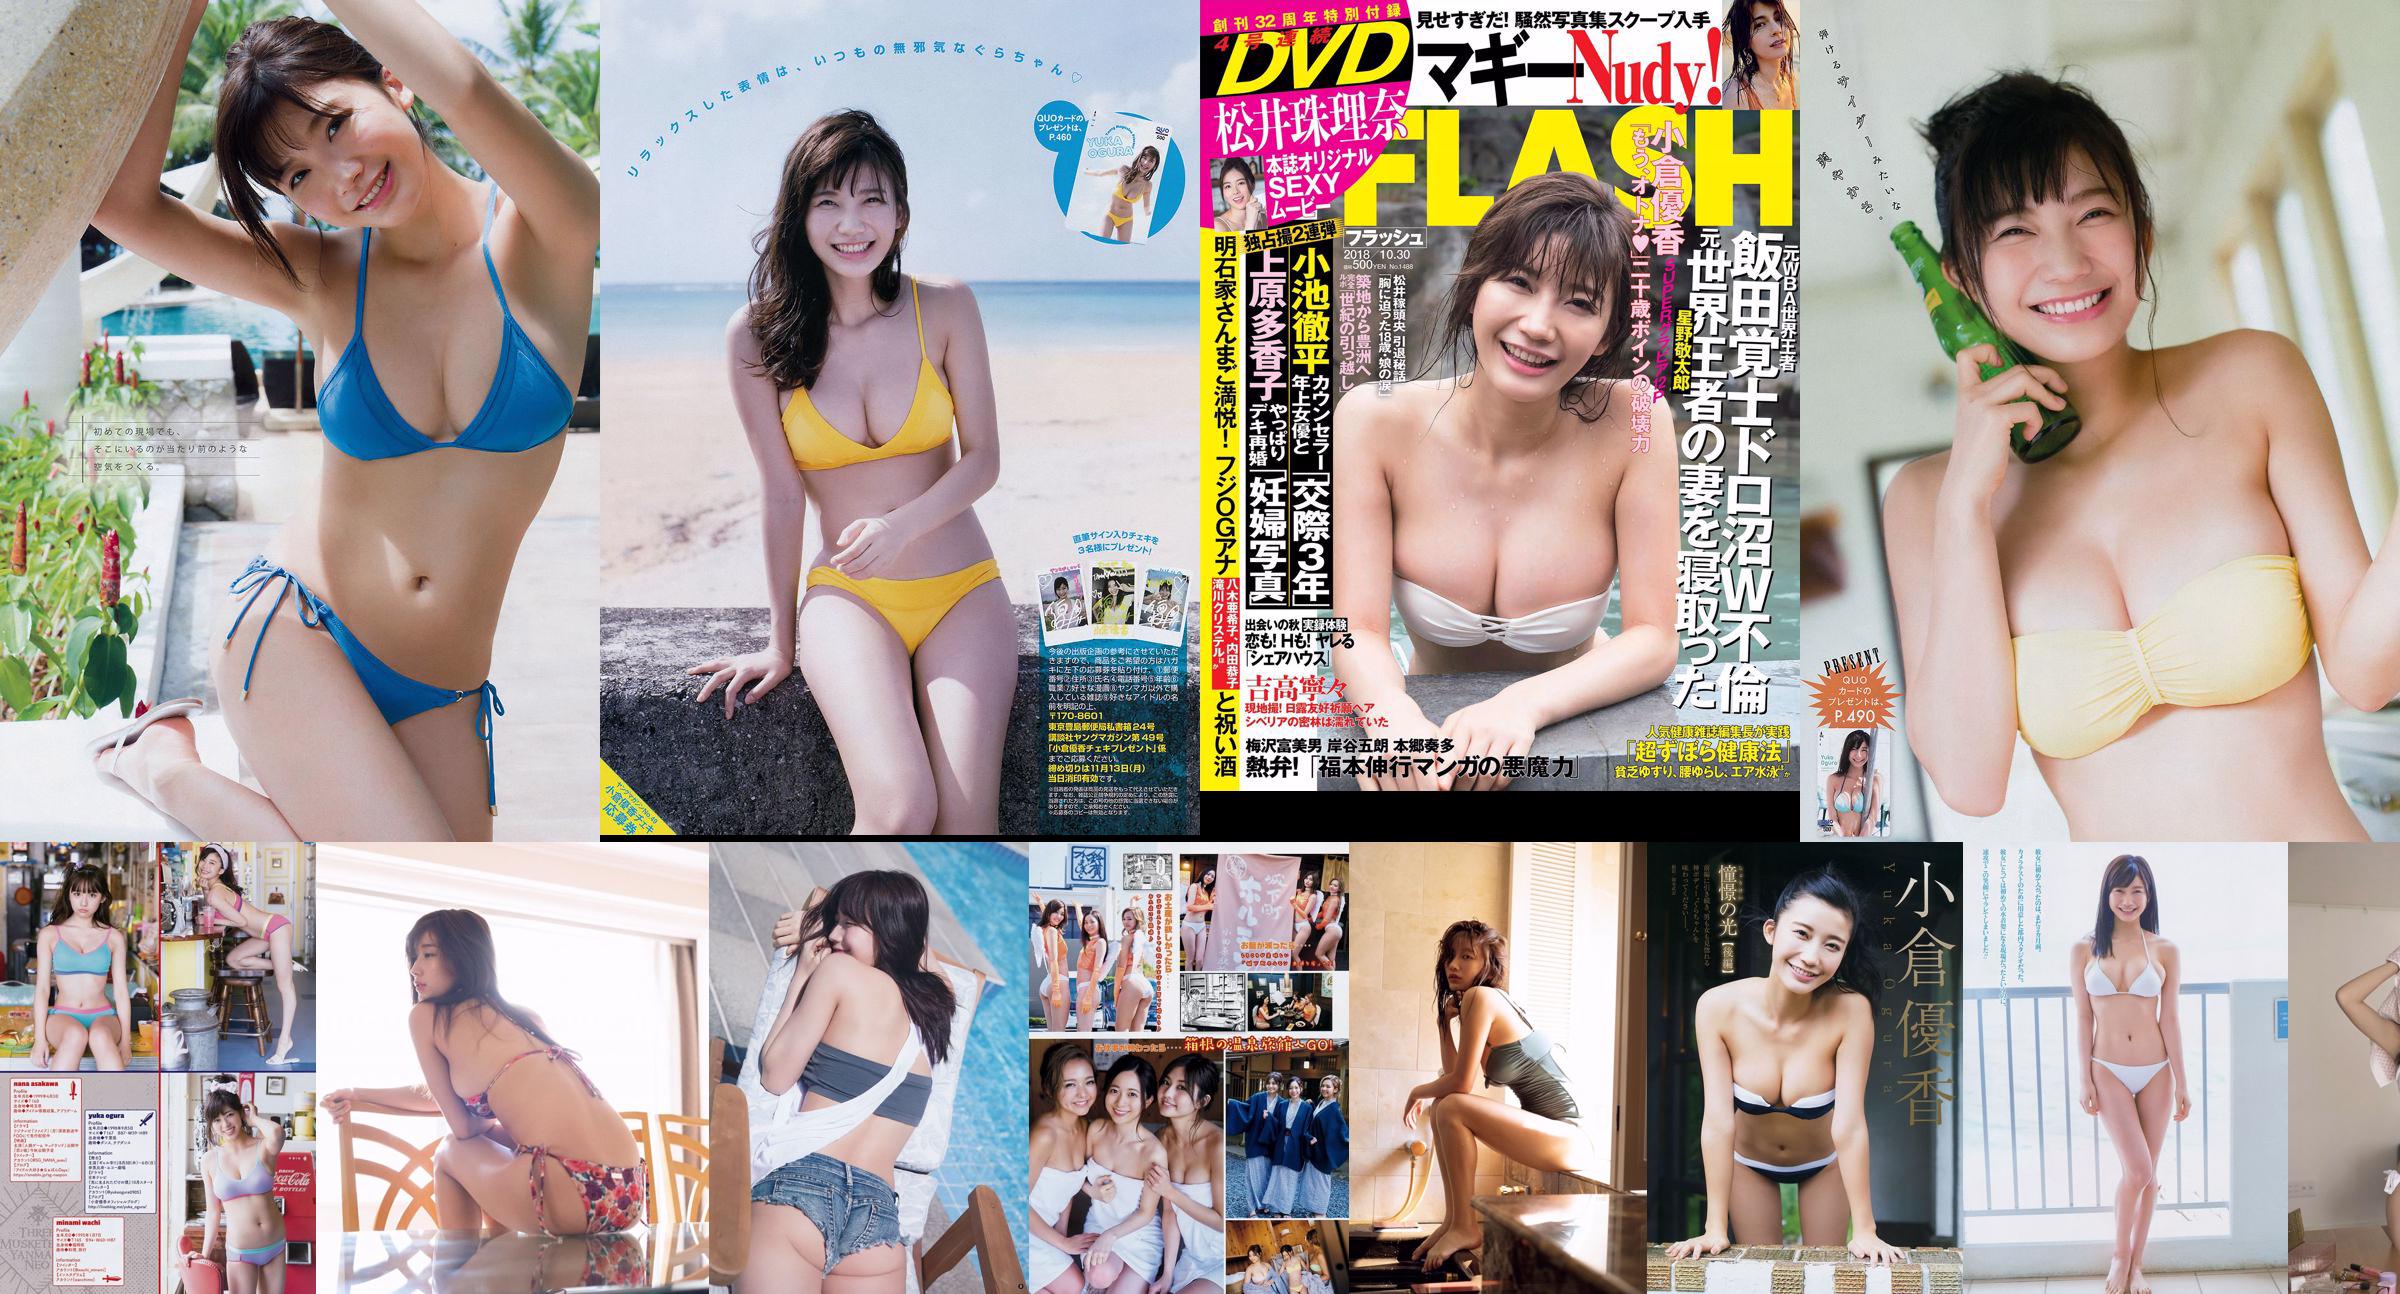 [Revista Young] Yuka Ogura Sayaka Mitori 2018 No.42 Fotografia No.94084b Página 6